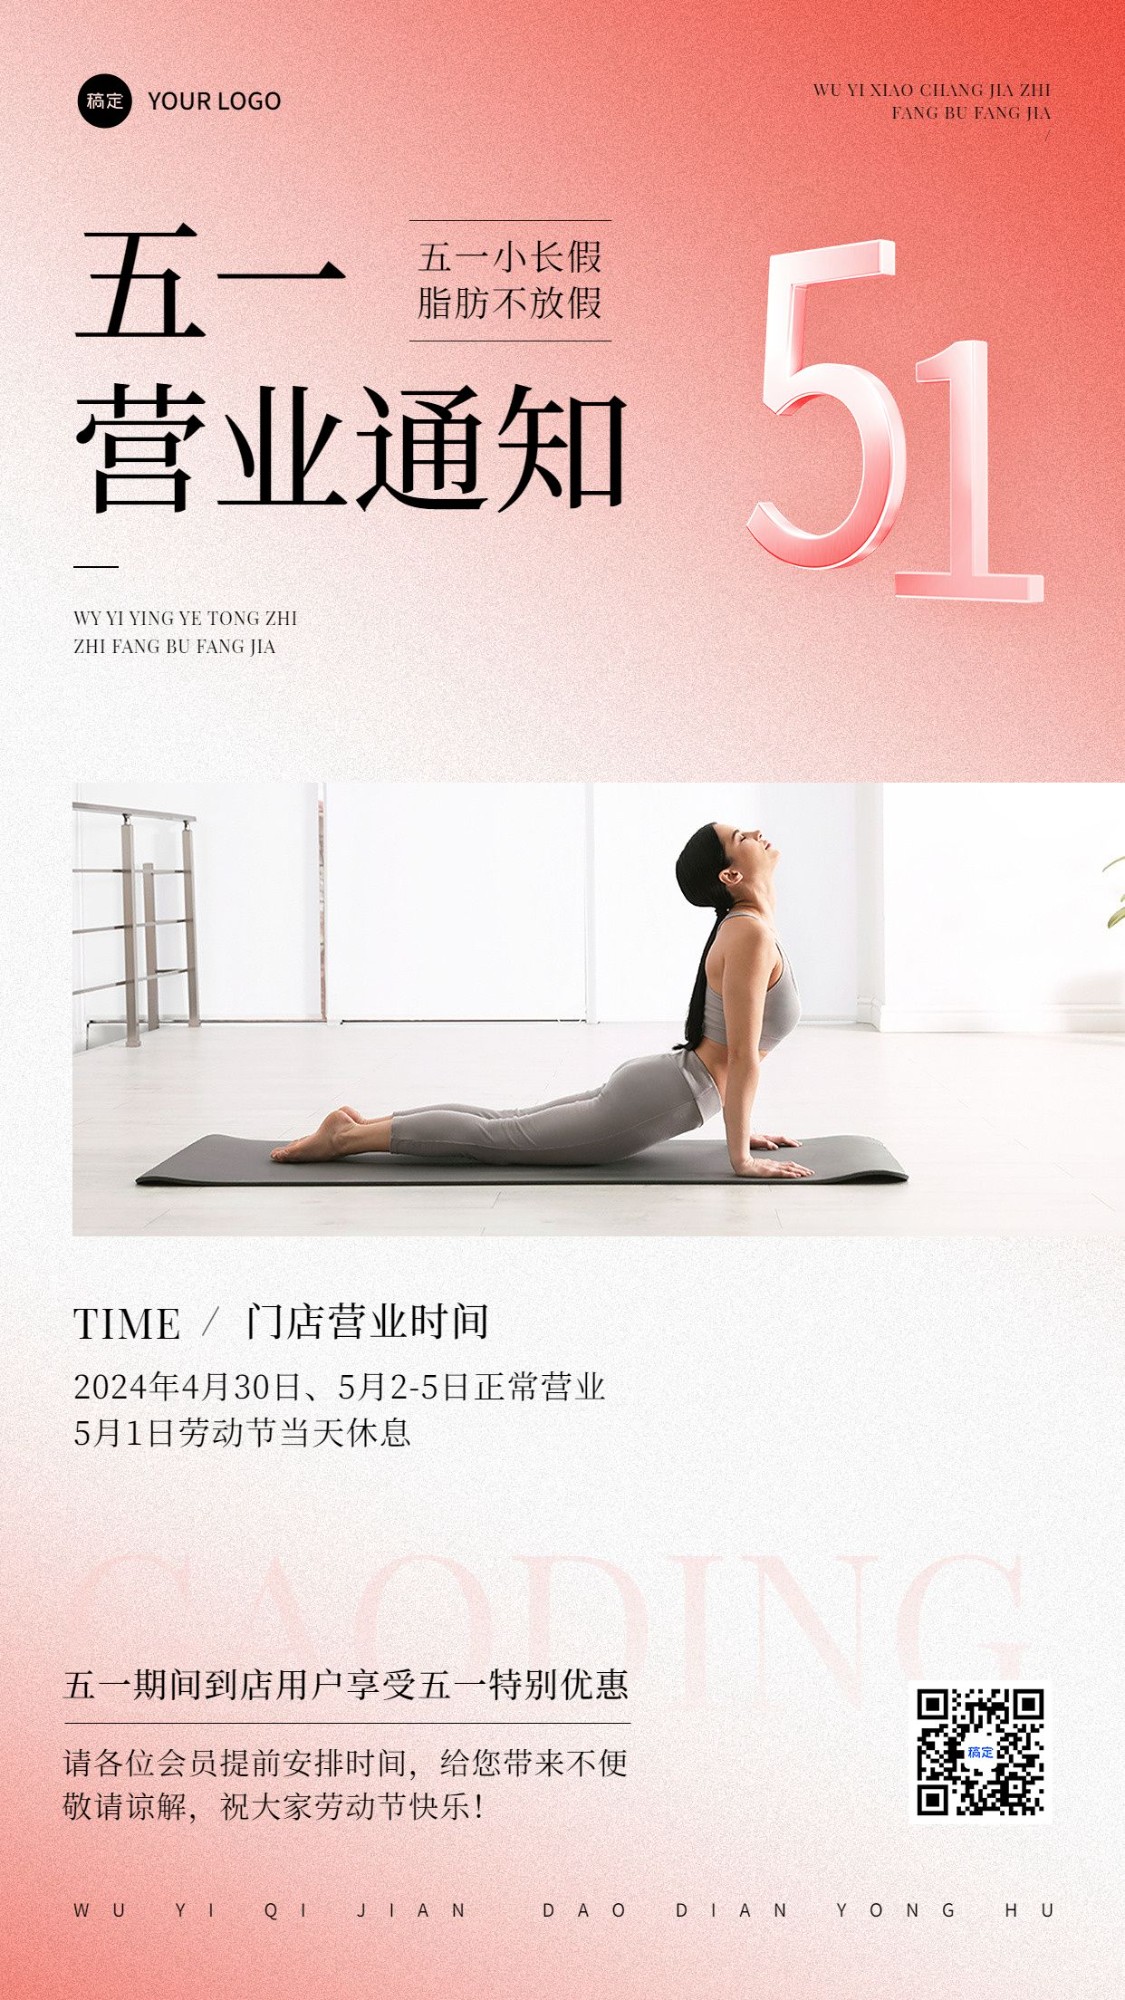 劳动节健身瑜伽门店营业公告放假通知弥散风竖版海报